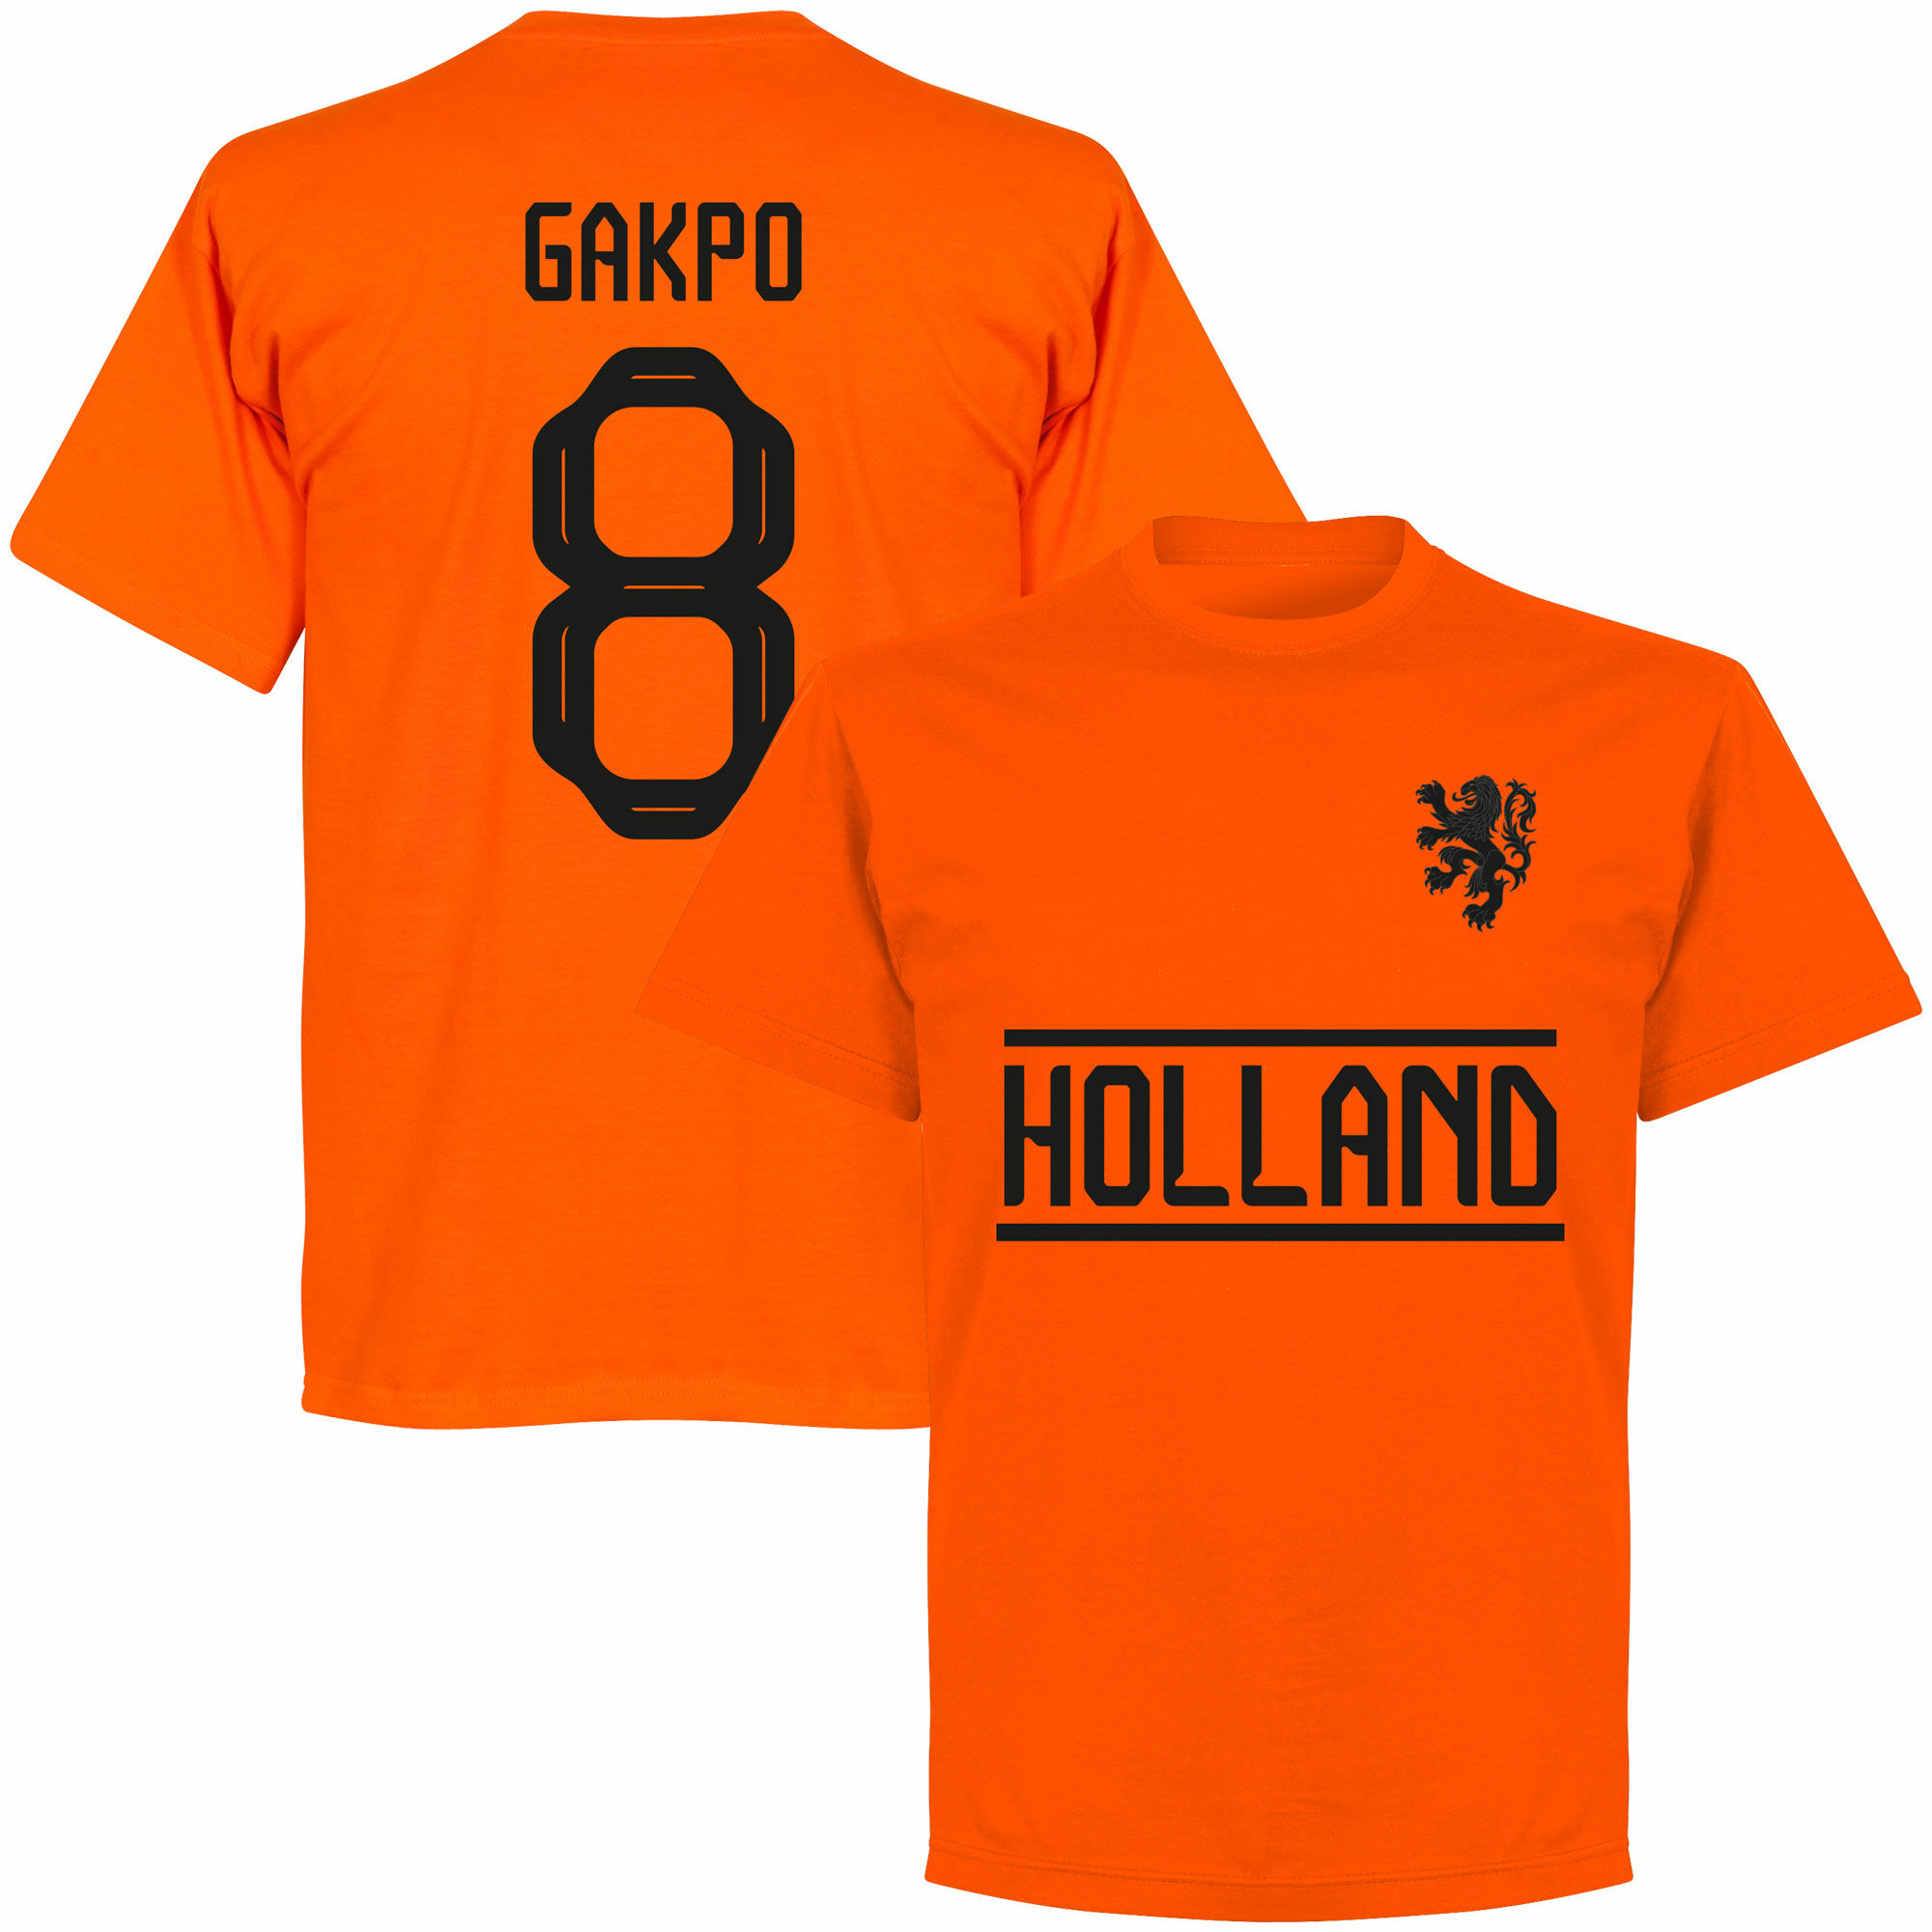 Nizozemí - Tričko - oranžové, Cody Gakpo, číslo 8